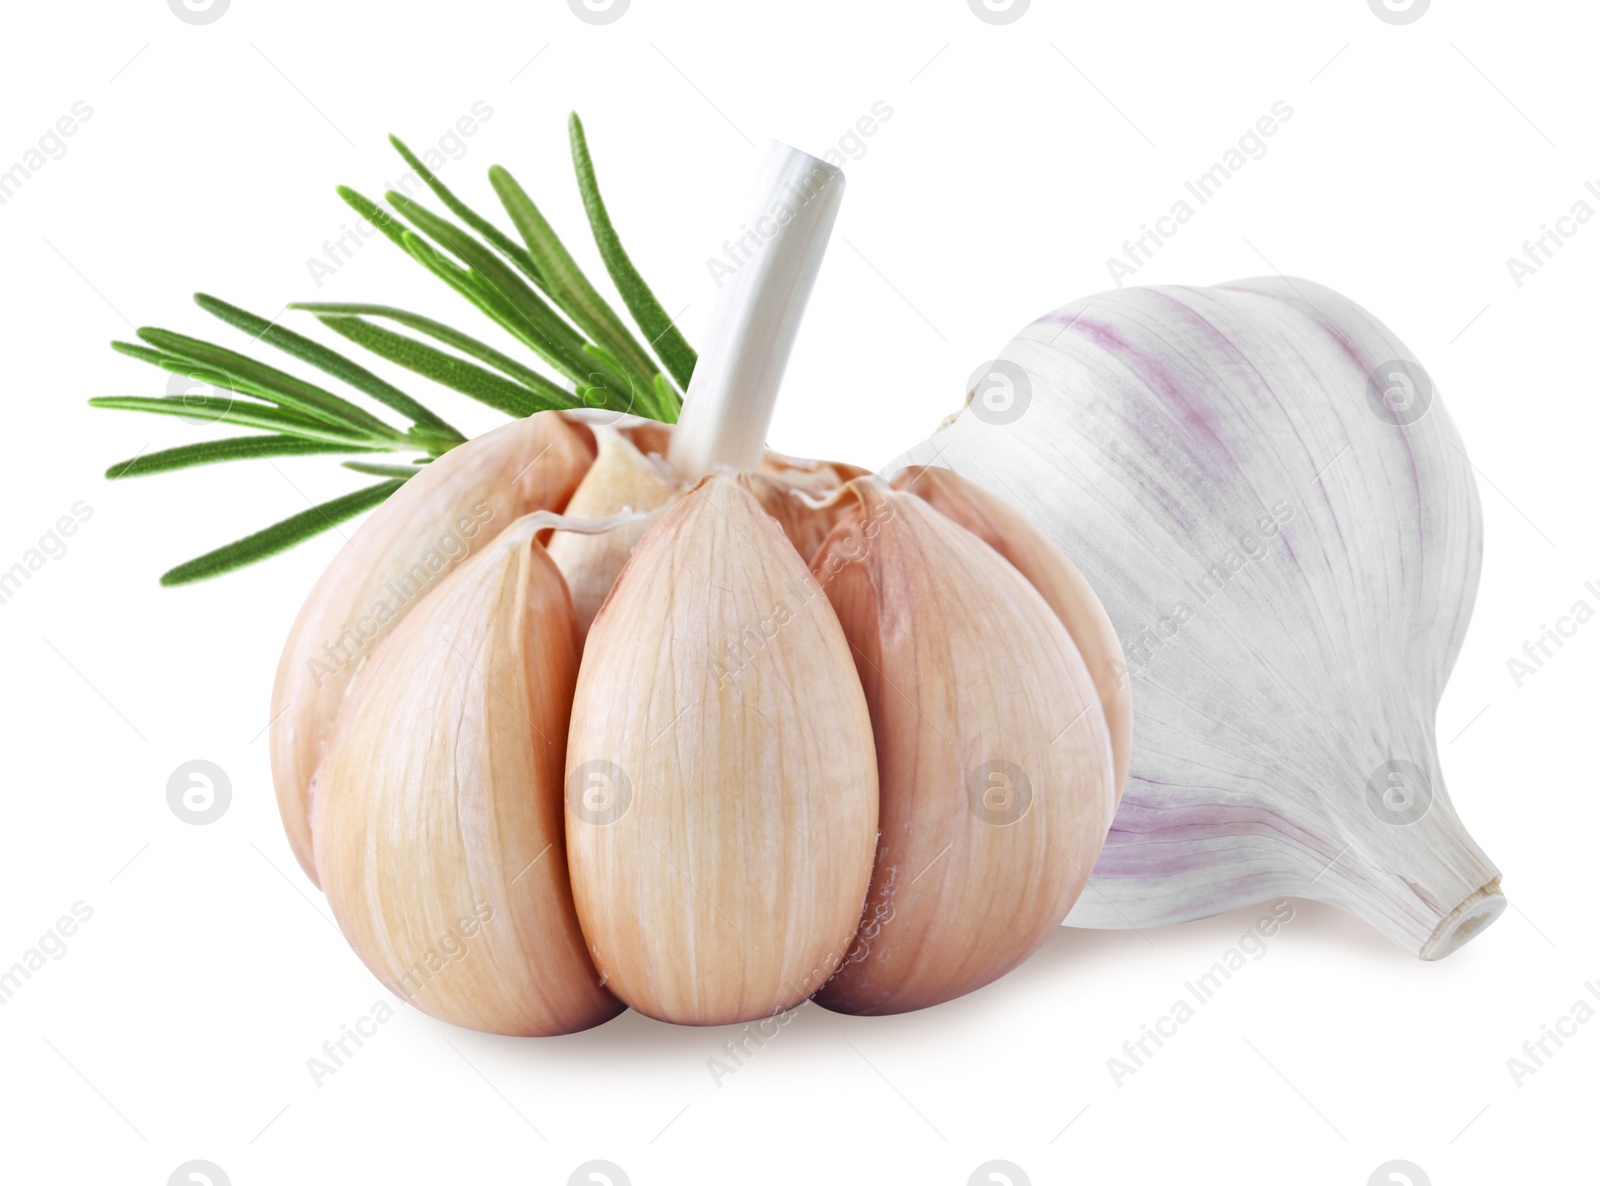 Image of Fresh garlic with rosemary on white background